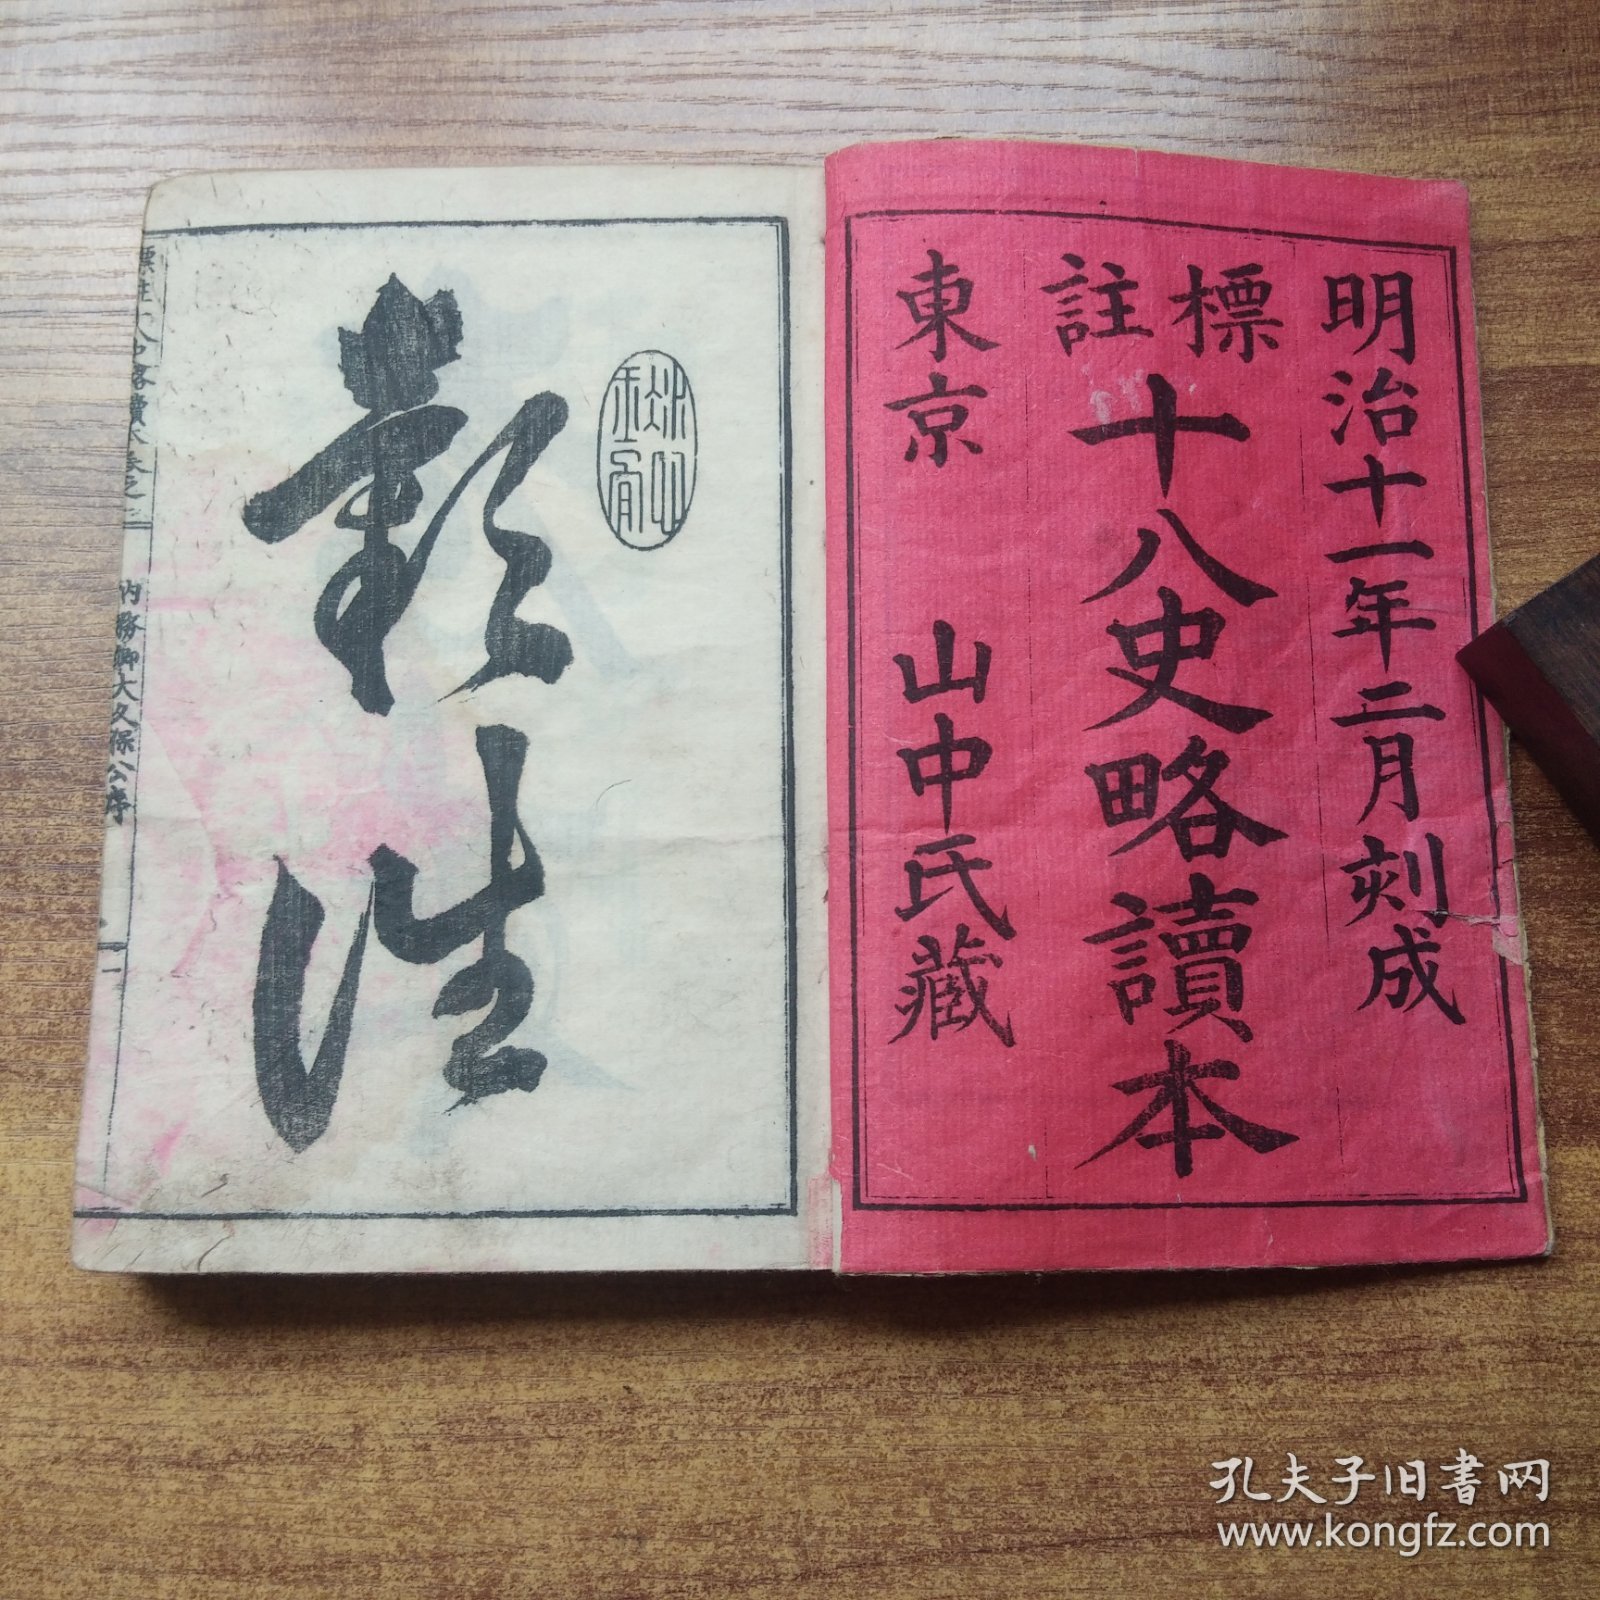 和刻本   《 标註十八史略读本 》7册全  中国古代史著作  明治11年（1878年）